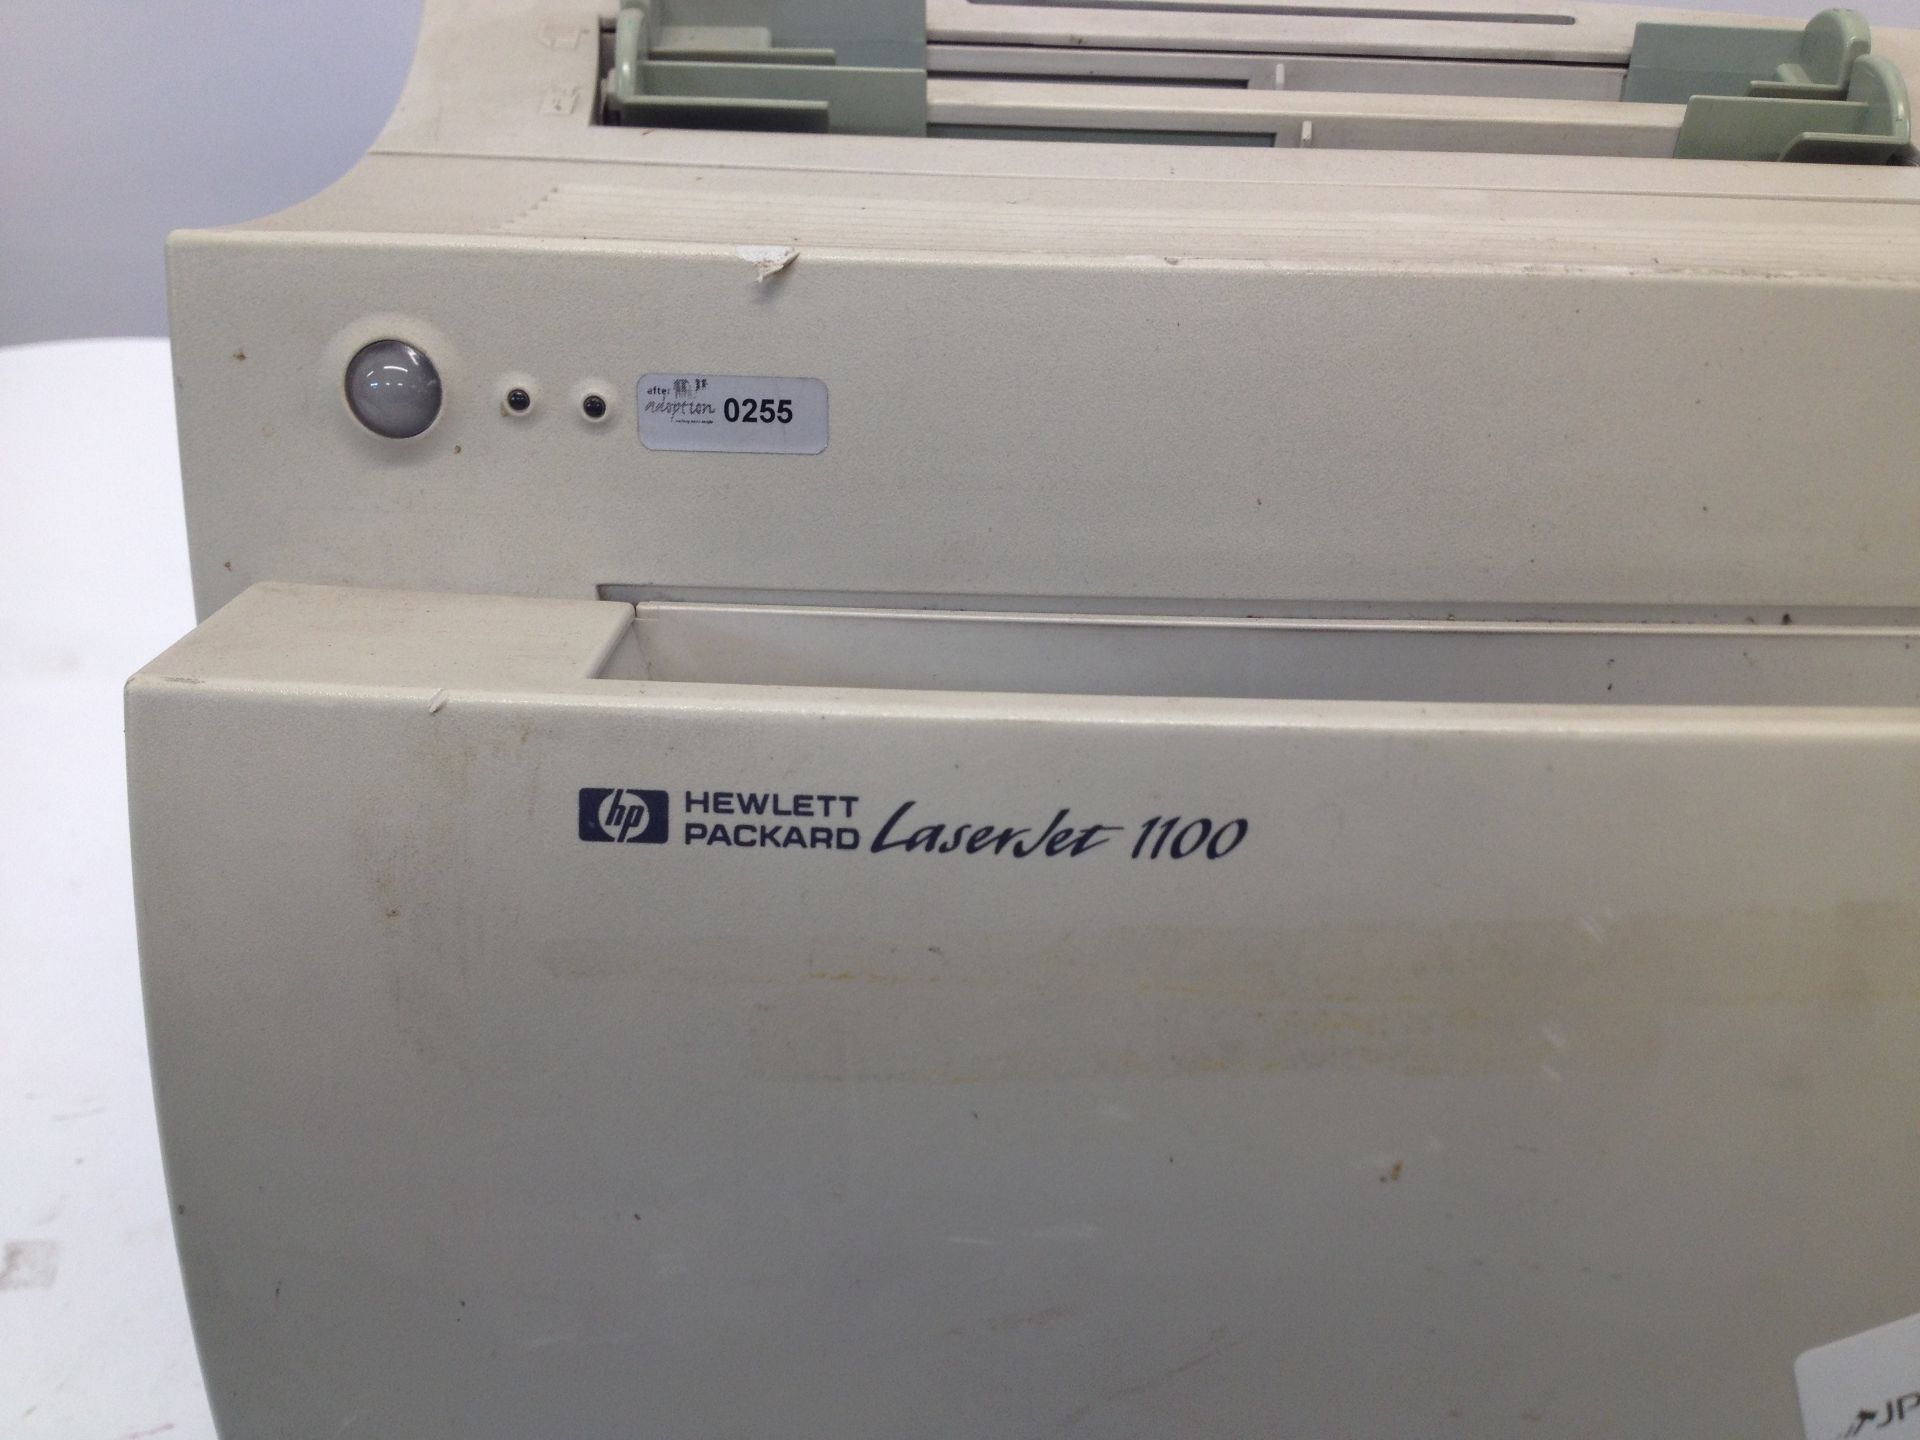 HP Laserjet 1100 Printer - Image 2 of 4